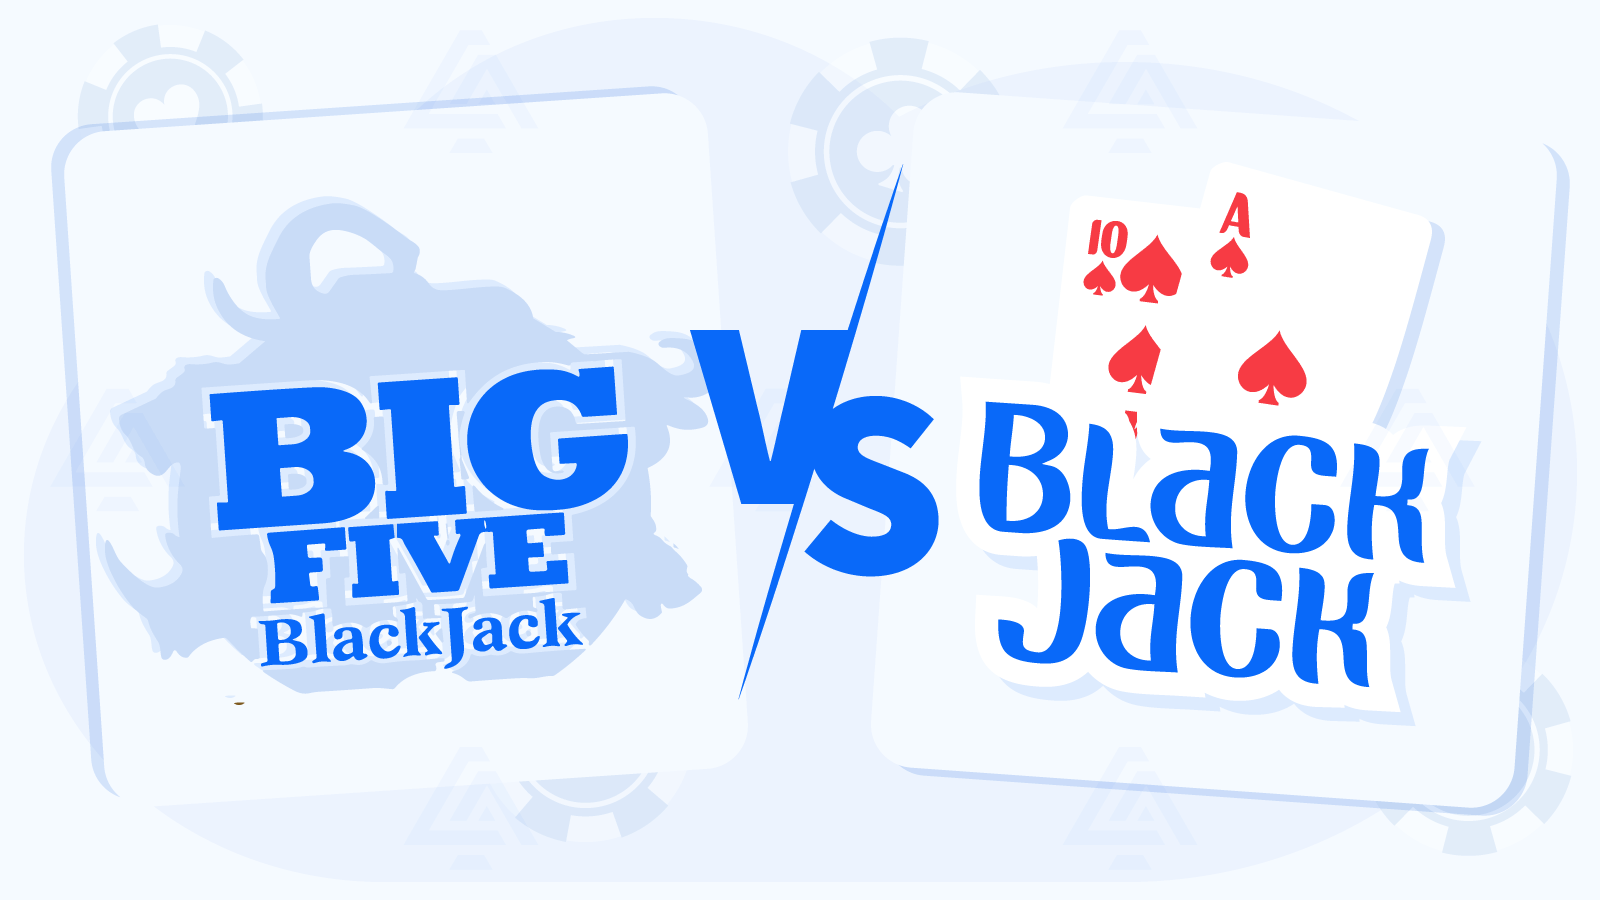 Big 5 Blackjack vs Blackjack Clasic